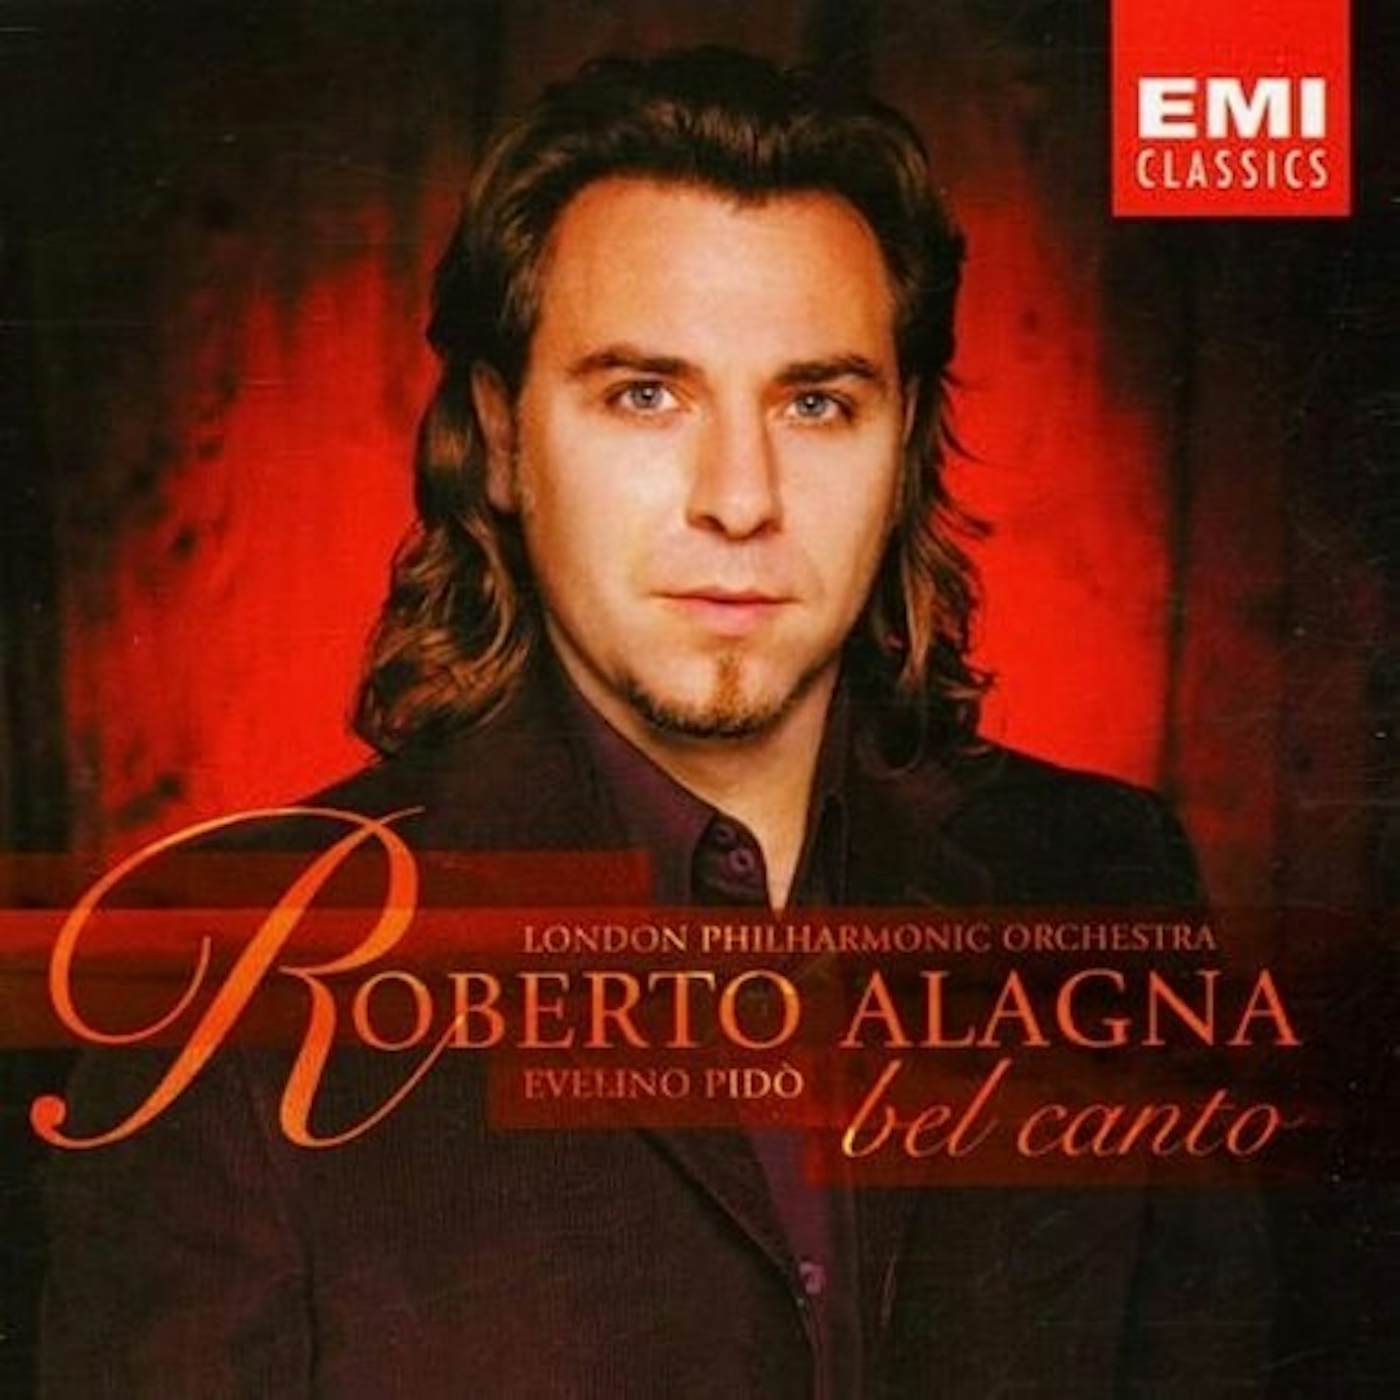 Roberto Alagna BEL CANTO CD